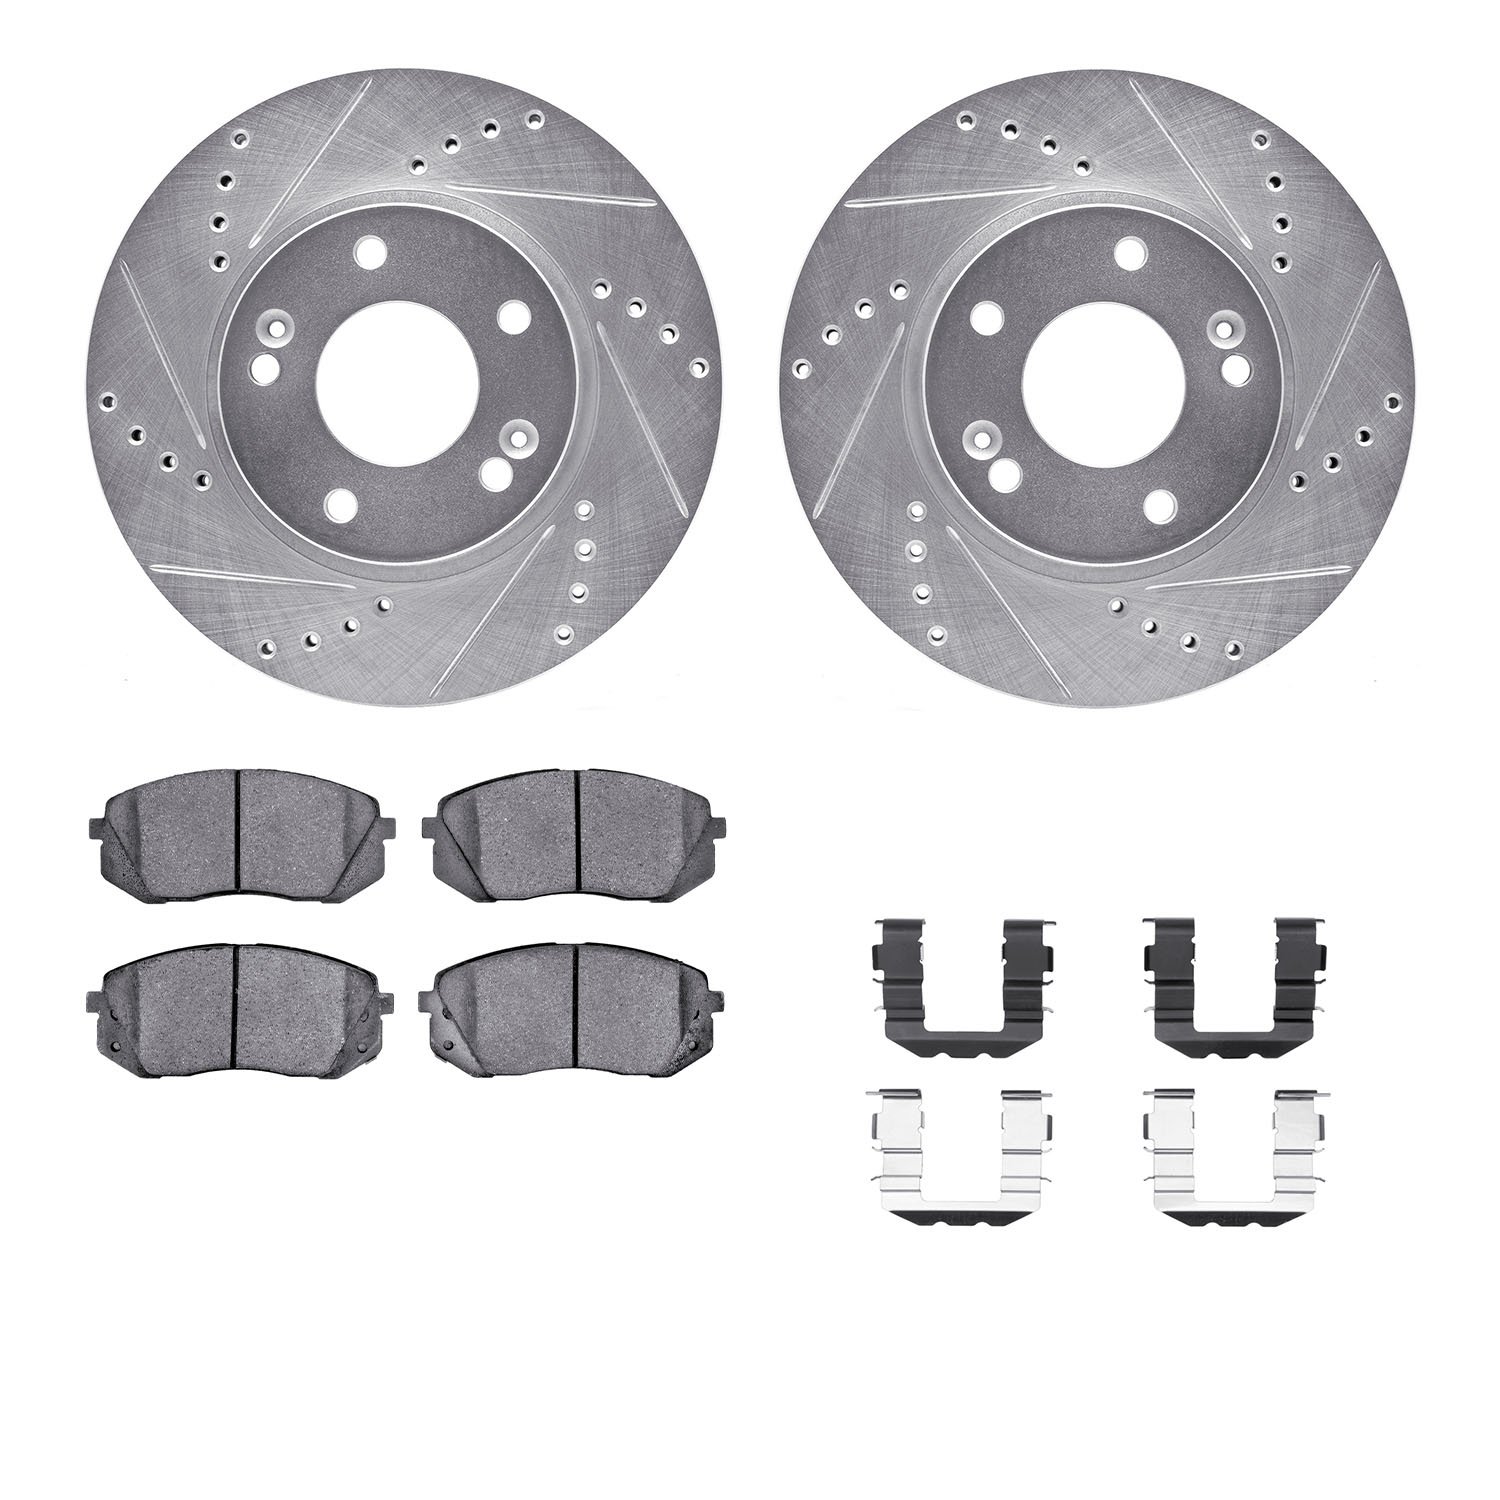 7312-03046 Drilled/Slotted Brake Rotor with 3000-Series Ceramic Brake Pads Kit & Hardware [Silver], 2015-2015 Kia/Hyundai/Genesi